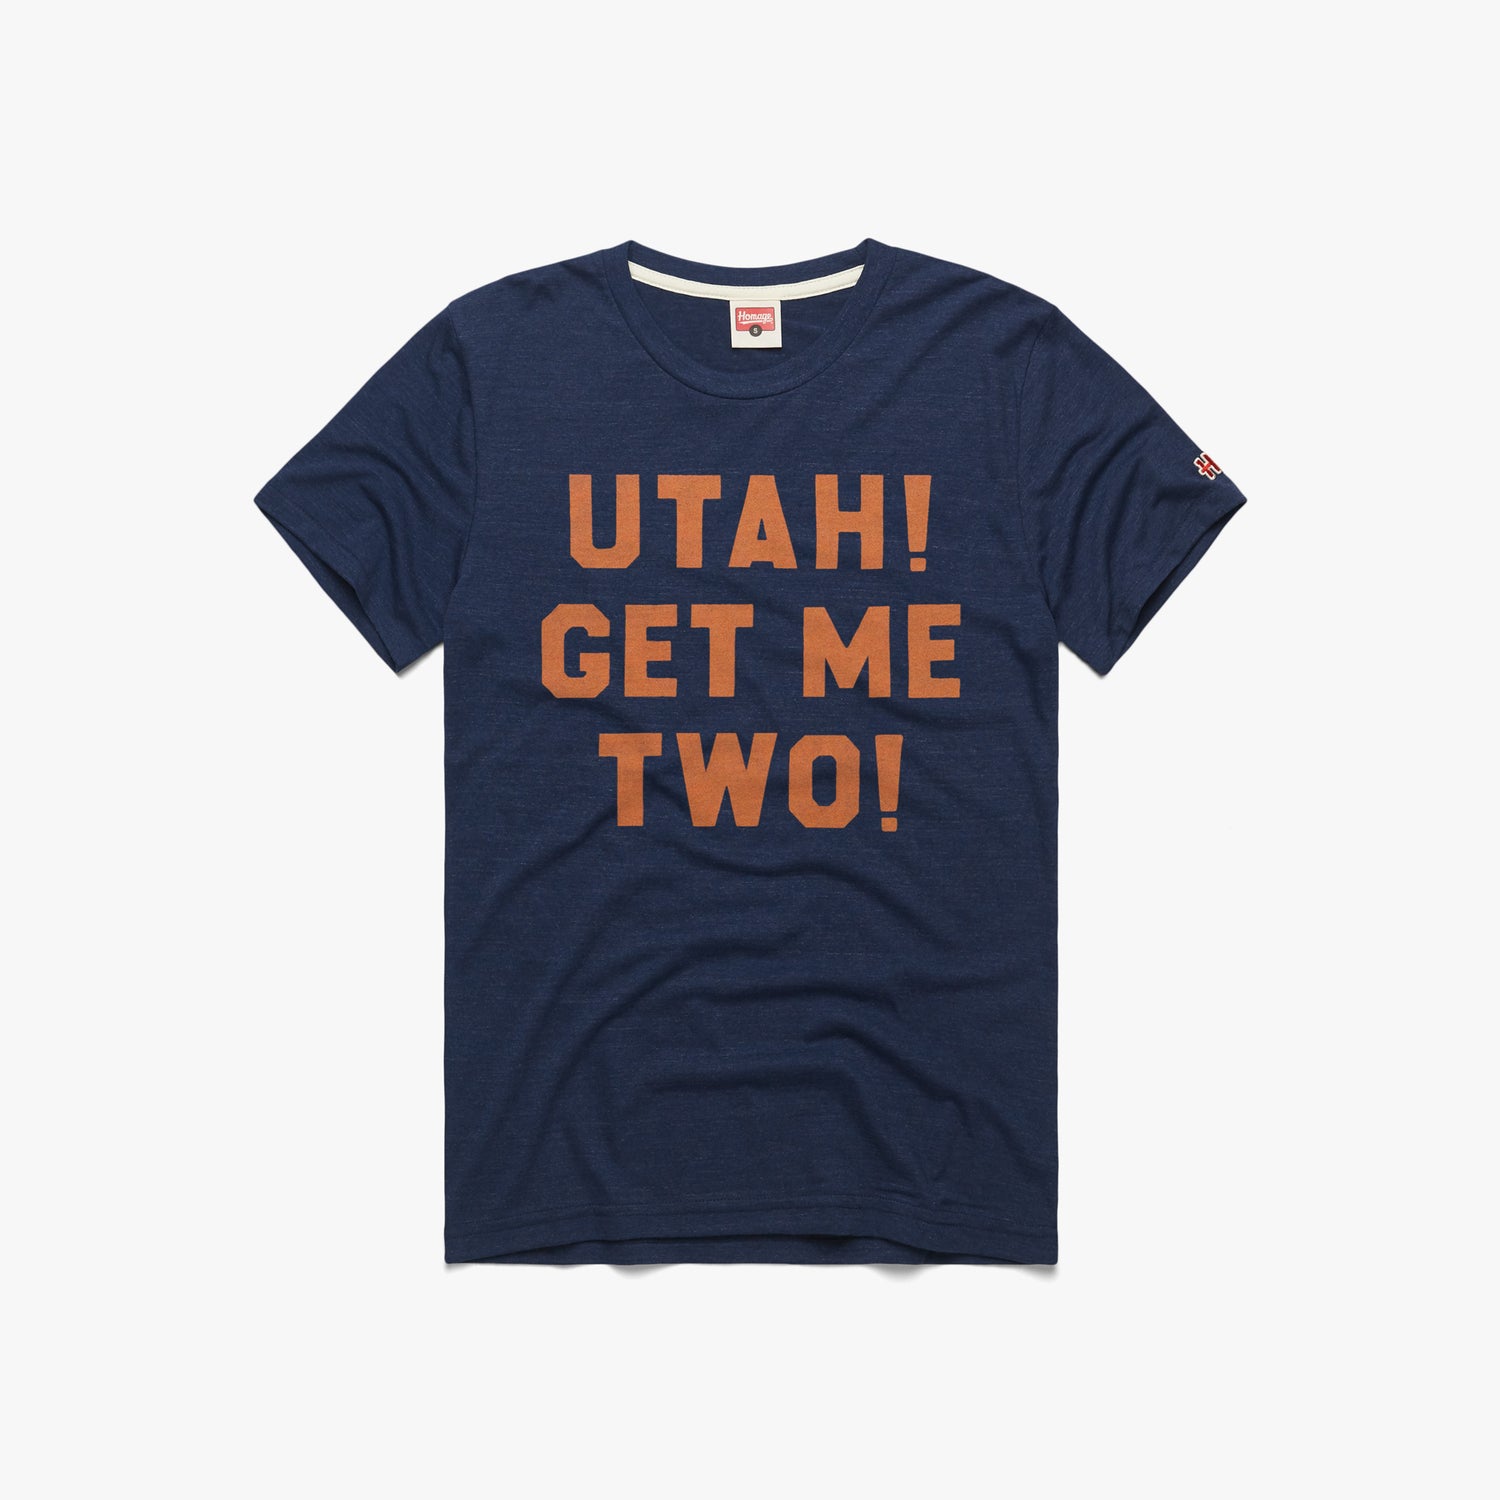 Utah! Get Me Two!